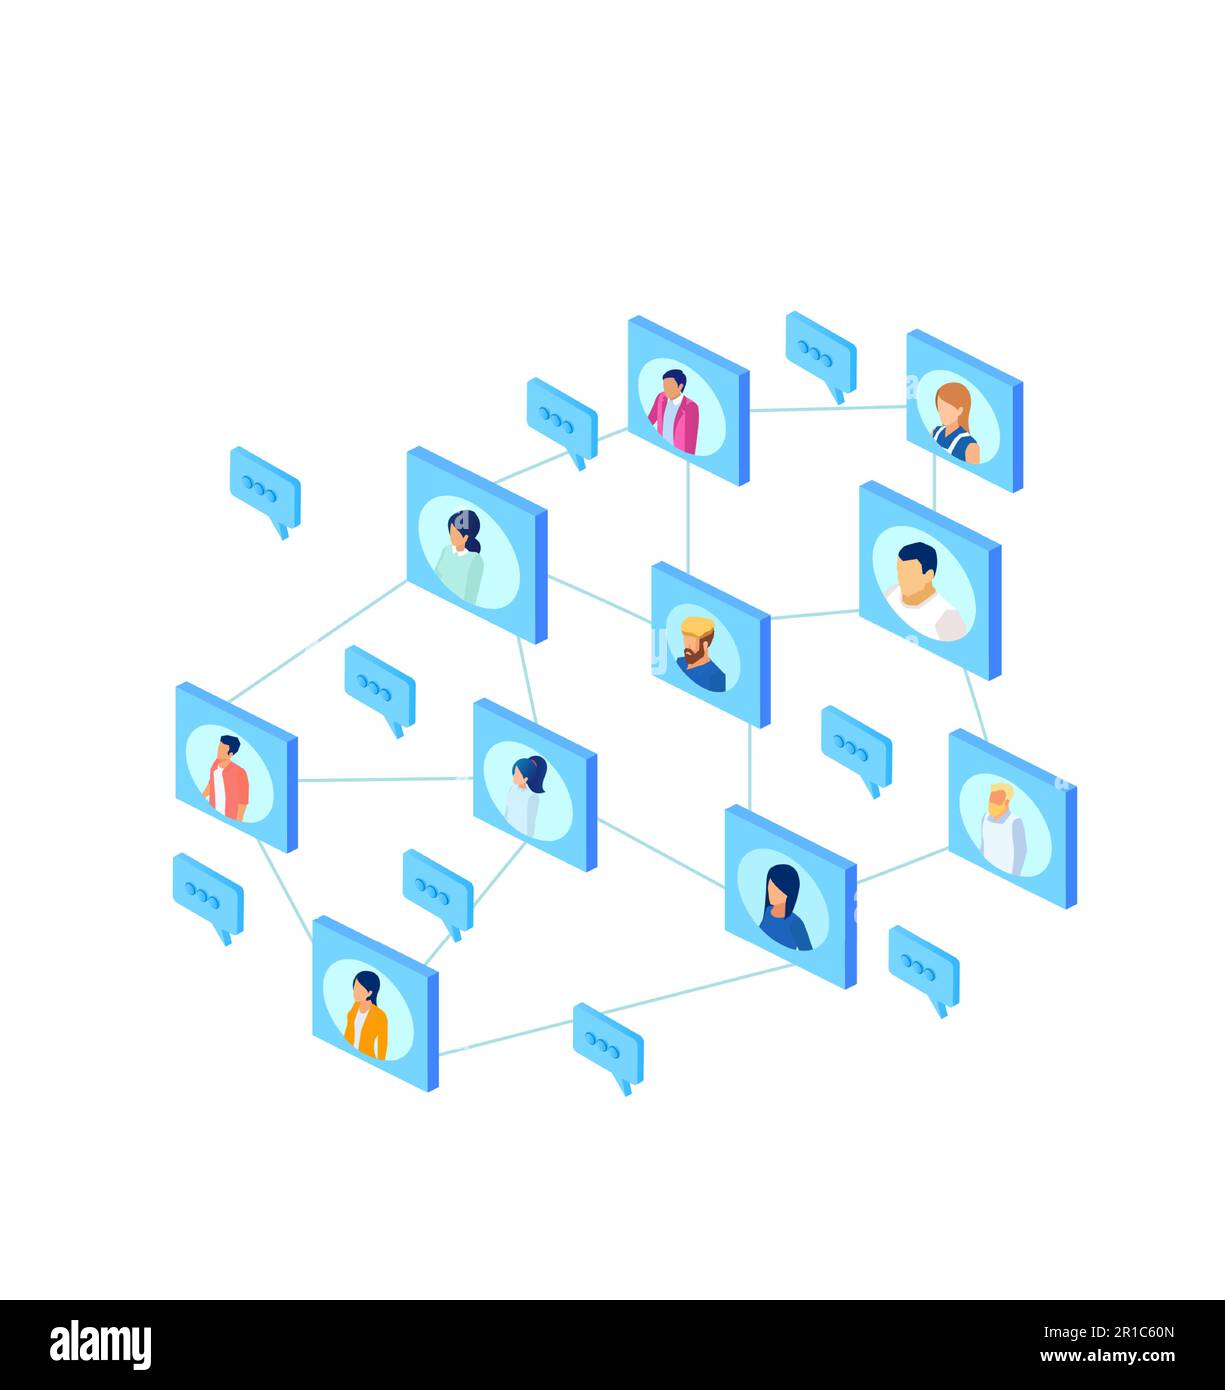 Réseau de personnes communiquant via l'application de réseaux sociaux Illustration de Vecteur